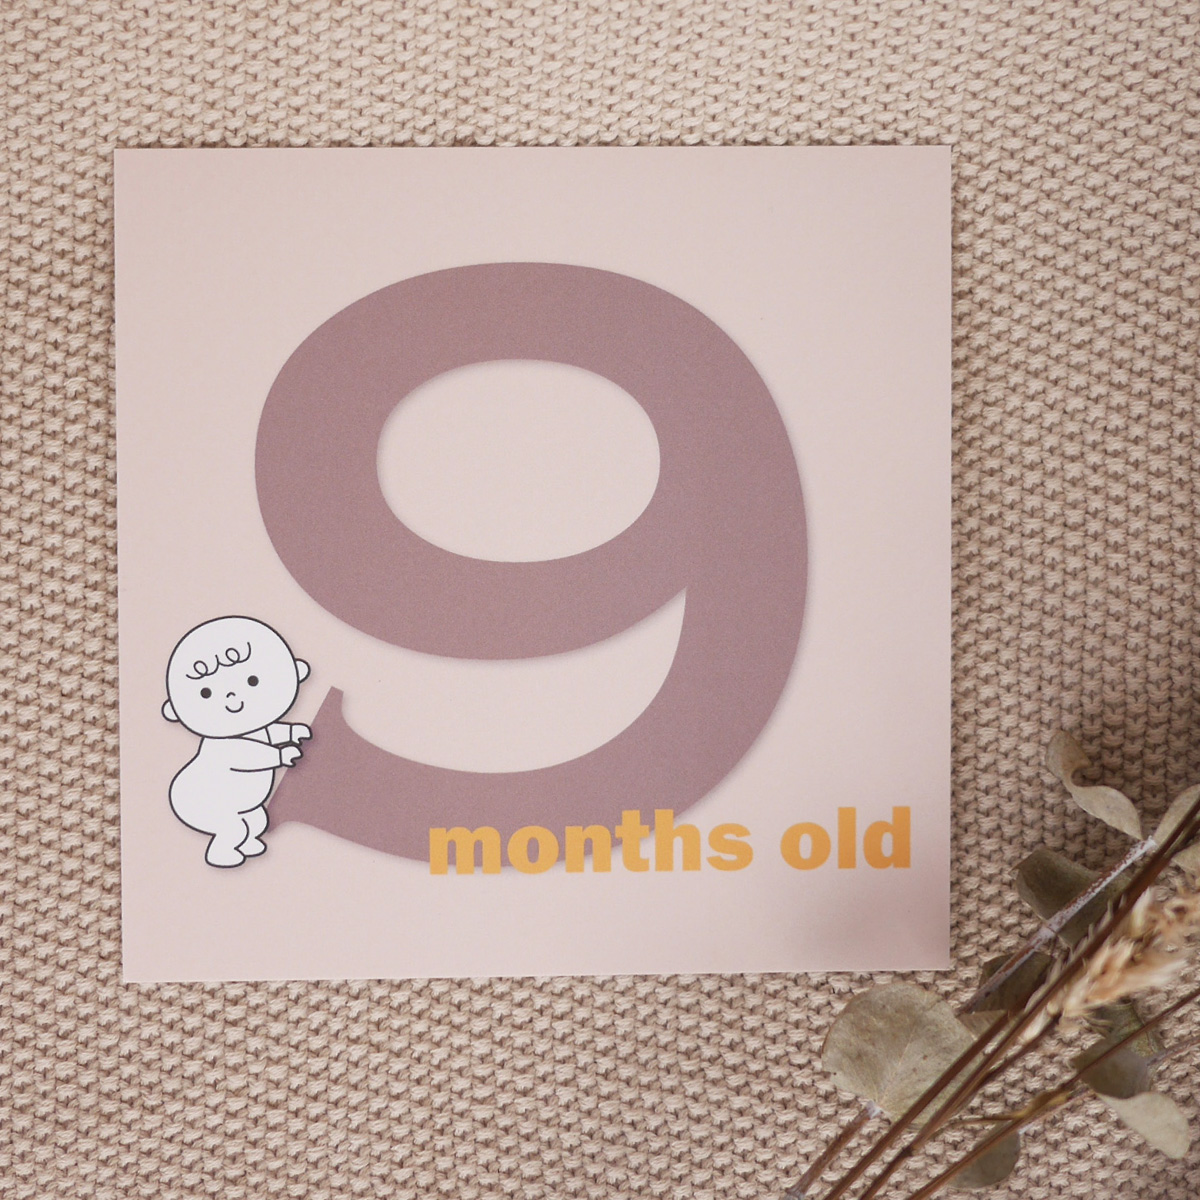 【 13枚セット 】バースデーカードセット 誕生から1歳まで 13枚セット 出産準備 出産祝い 誕生日 赤ちゃん お祝い メッセージカード 男の子 女の子 おしゃれ 0歳 1歳 0ヶ月 2ヶ月 3ヶ月 4ヶ月 5ヶ月 6ヶ月 7ヶ月 8ヶ月 9ヶ月 10ヶ月 11ヶ月 12ヶ月